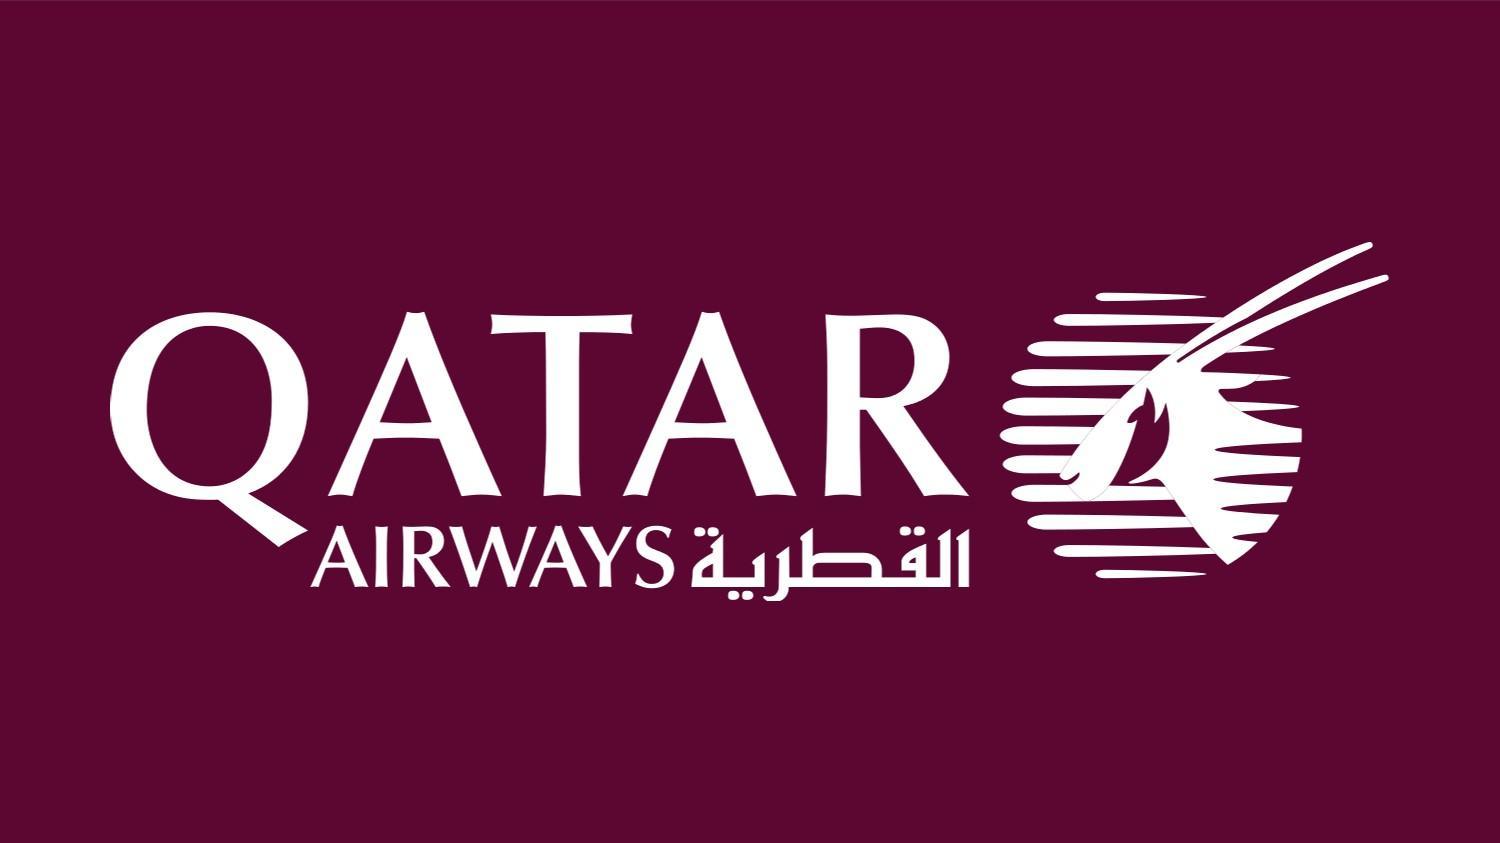 Stadio della Roma, Qatar Airways possibile name sponsor dell'impianto